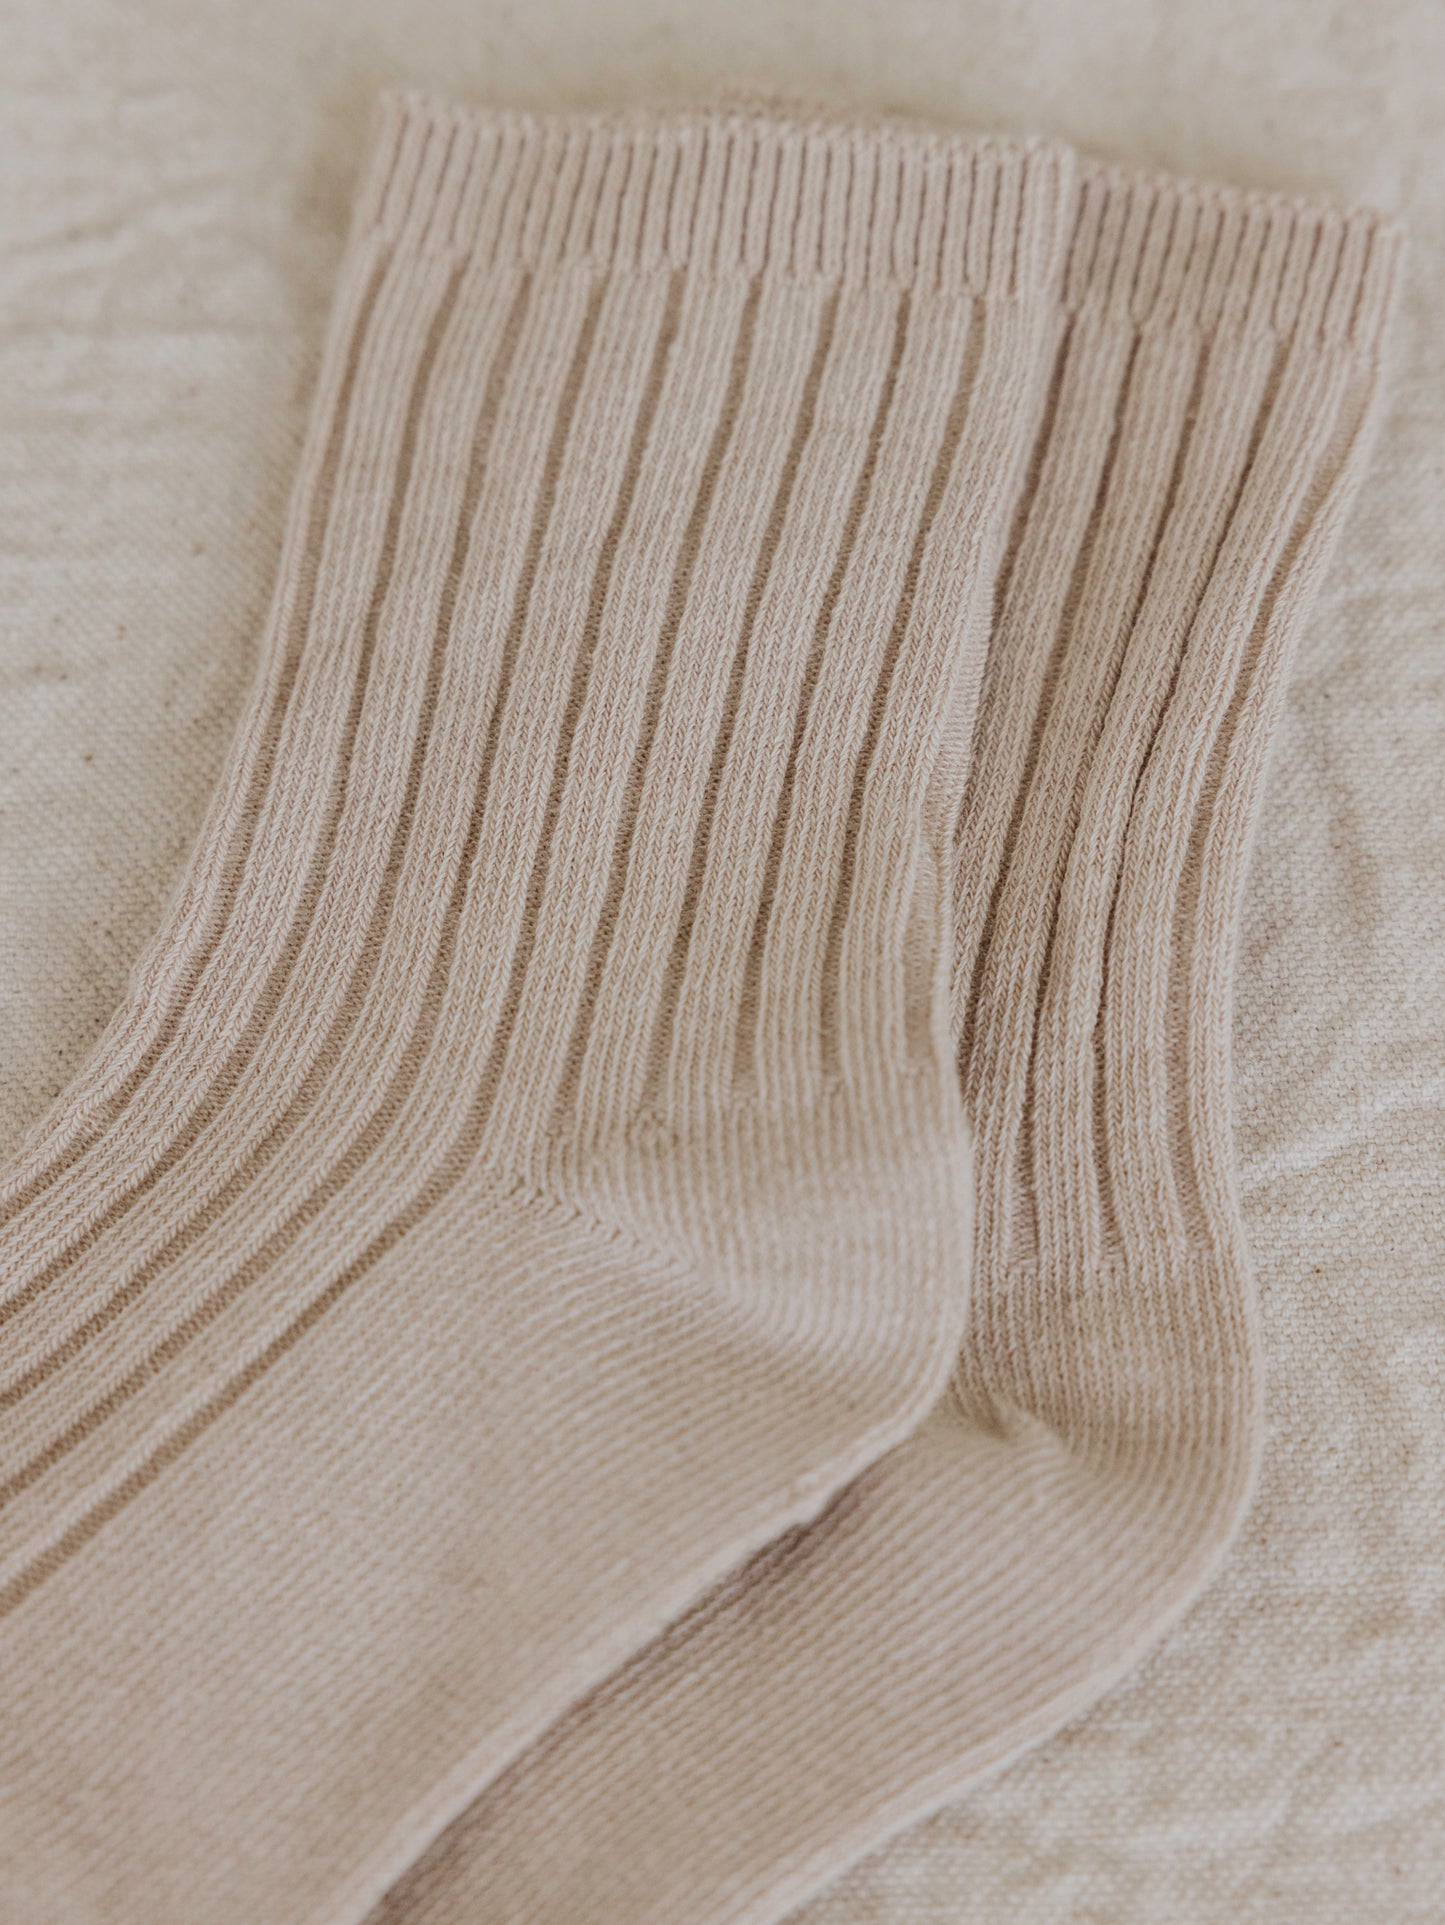 Cotton Socks - Oat